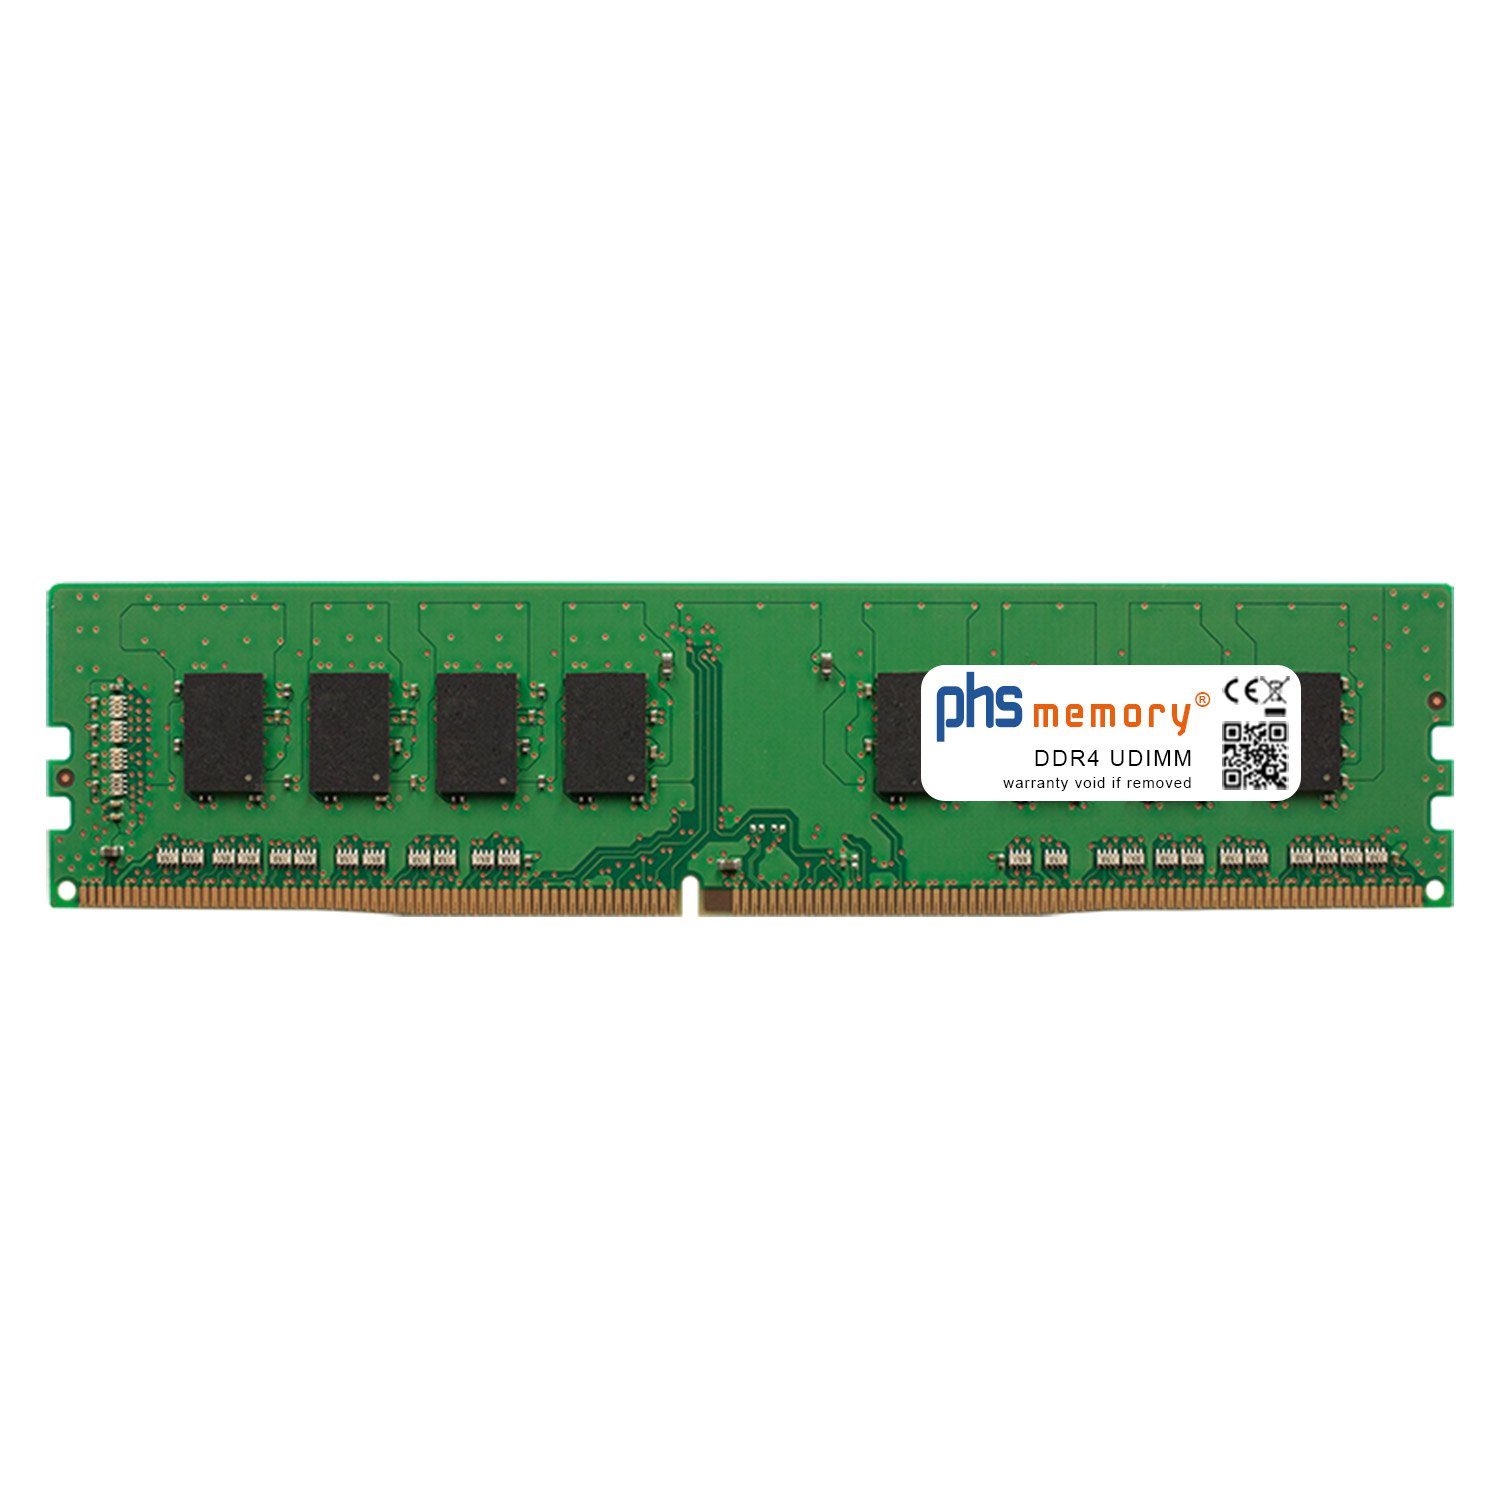 PHS-memory RAM für Captiva Advanced Gaming R65-532 Arbeitsspeicher